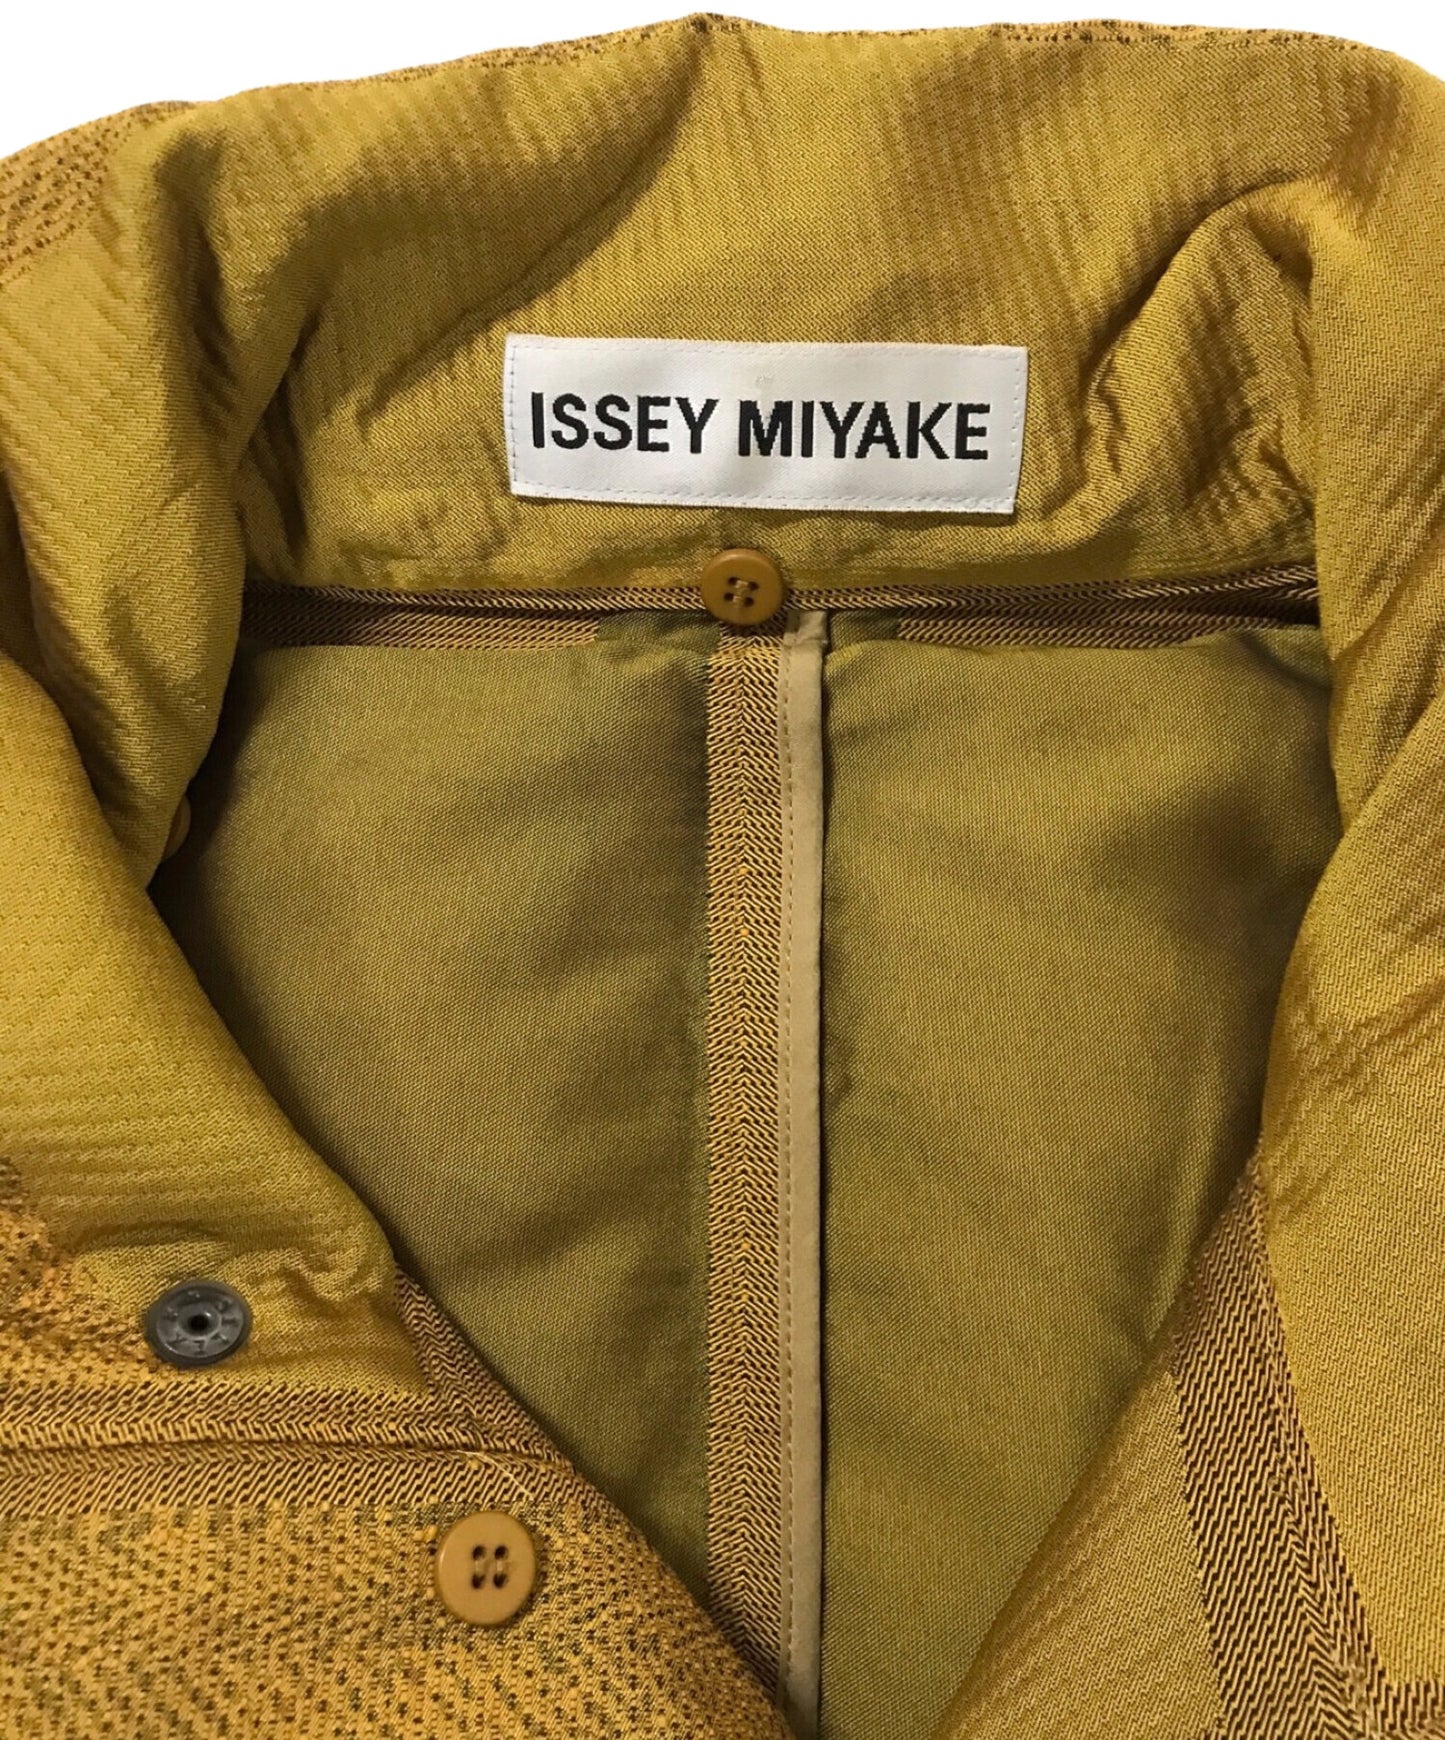 Issey Miyake Interaint Design Down Jacket